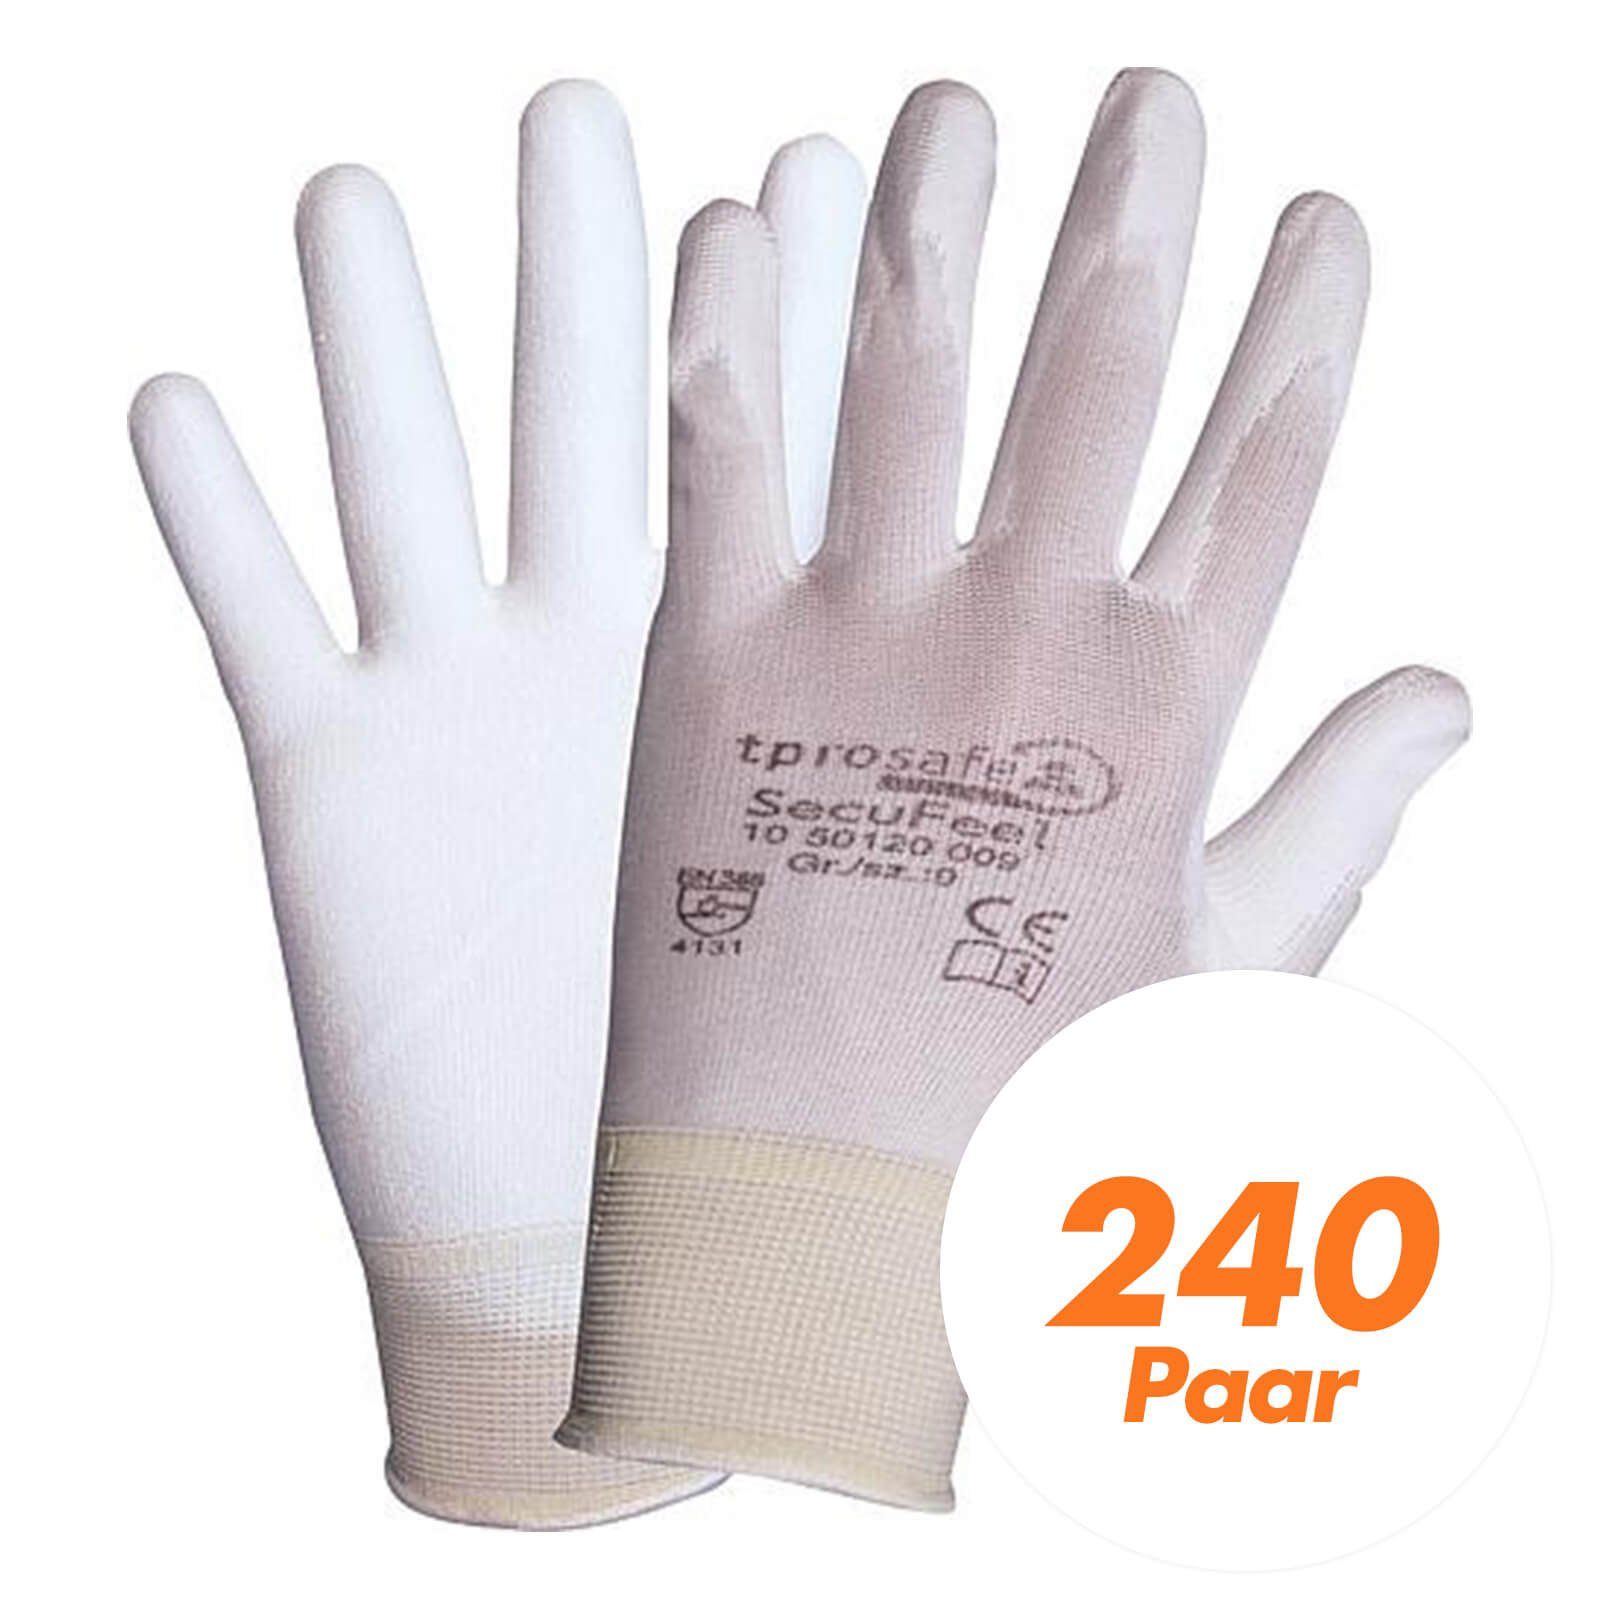 240x SecuFeel Nitril-Handschuhe tprosafe (Spar-Set) white tprosafe PU-Arbeitsschutzhandschuhe, - Handschuhe